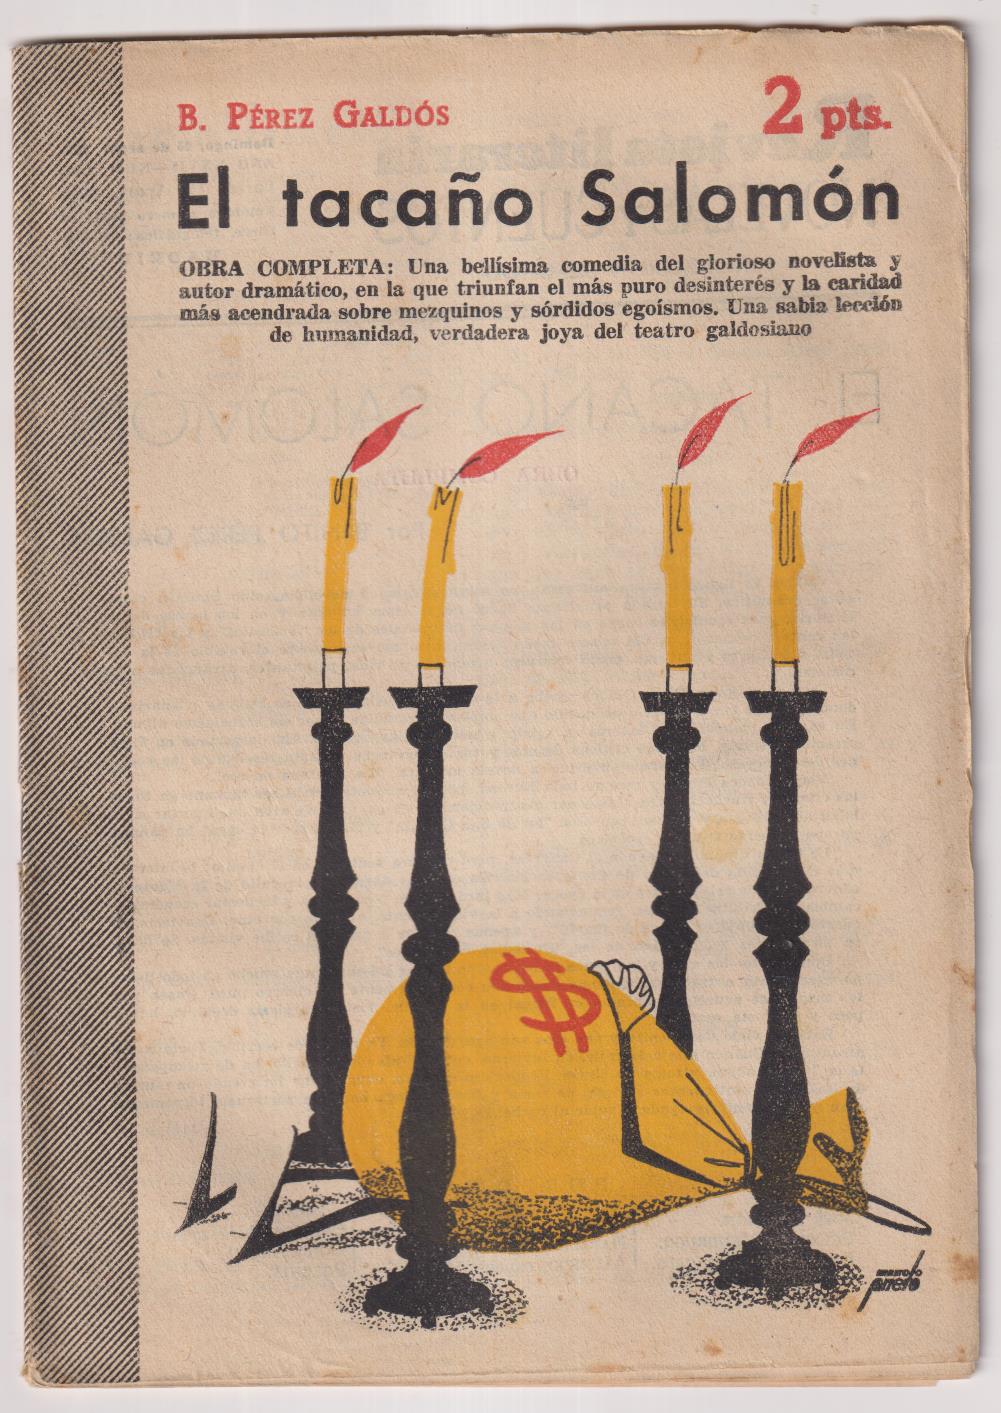 Revista Literaria Novelas y Cuentos nº 1272. B. Pérez Galdós. El tacaño Salomón. Año 1955